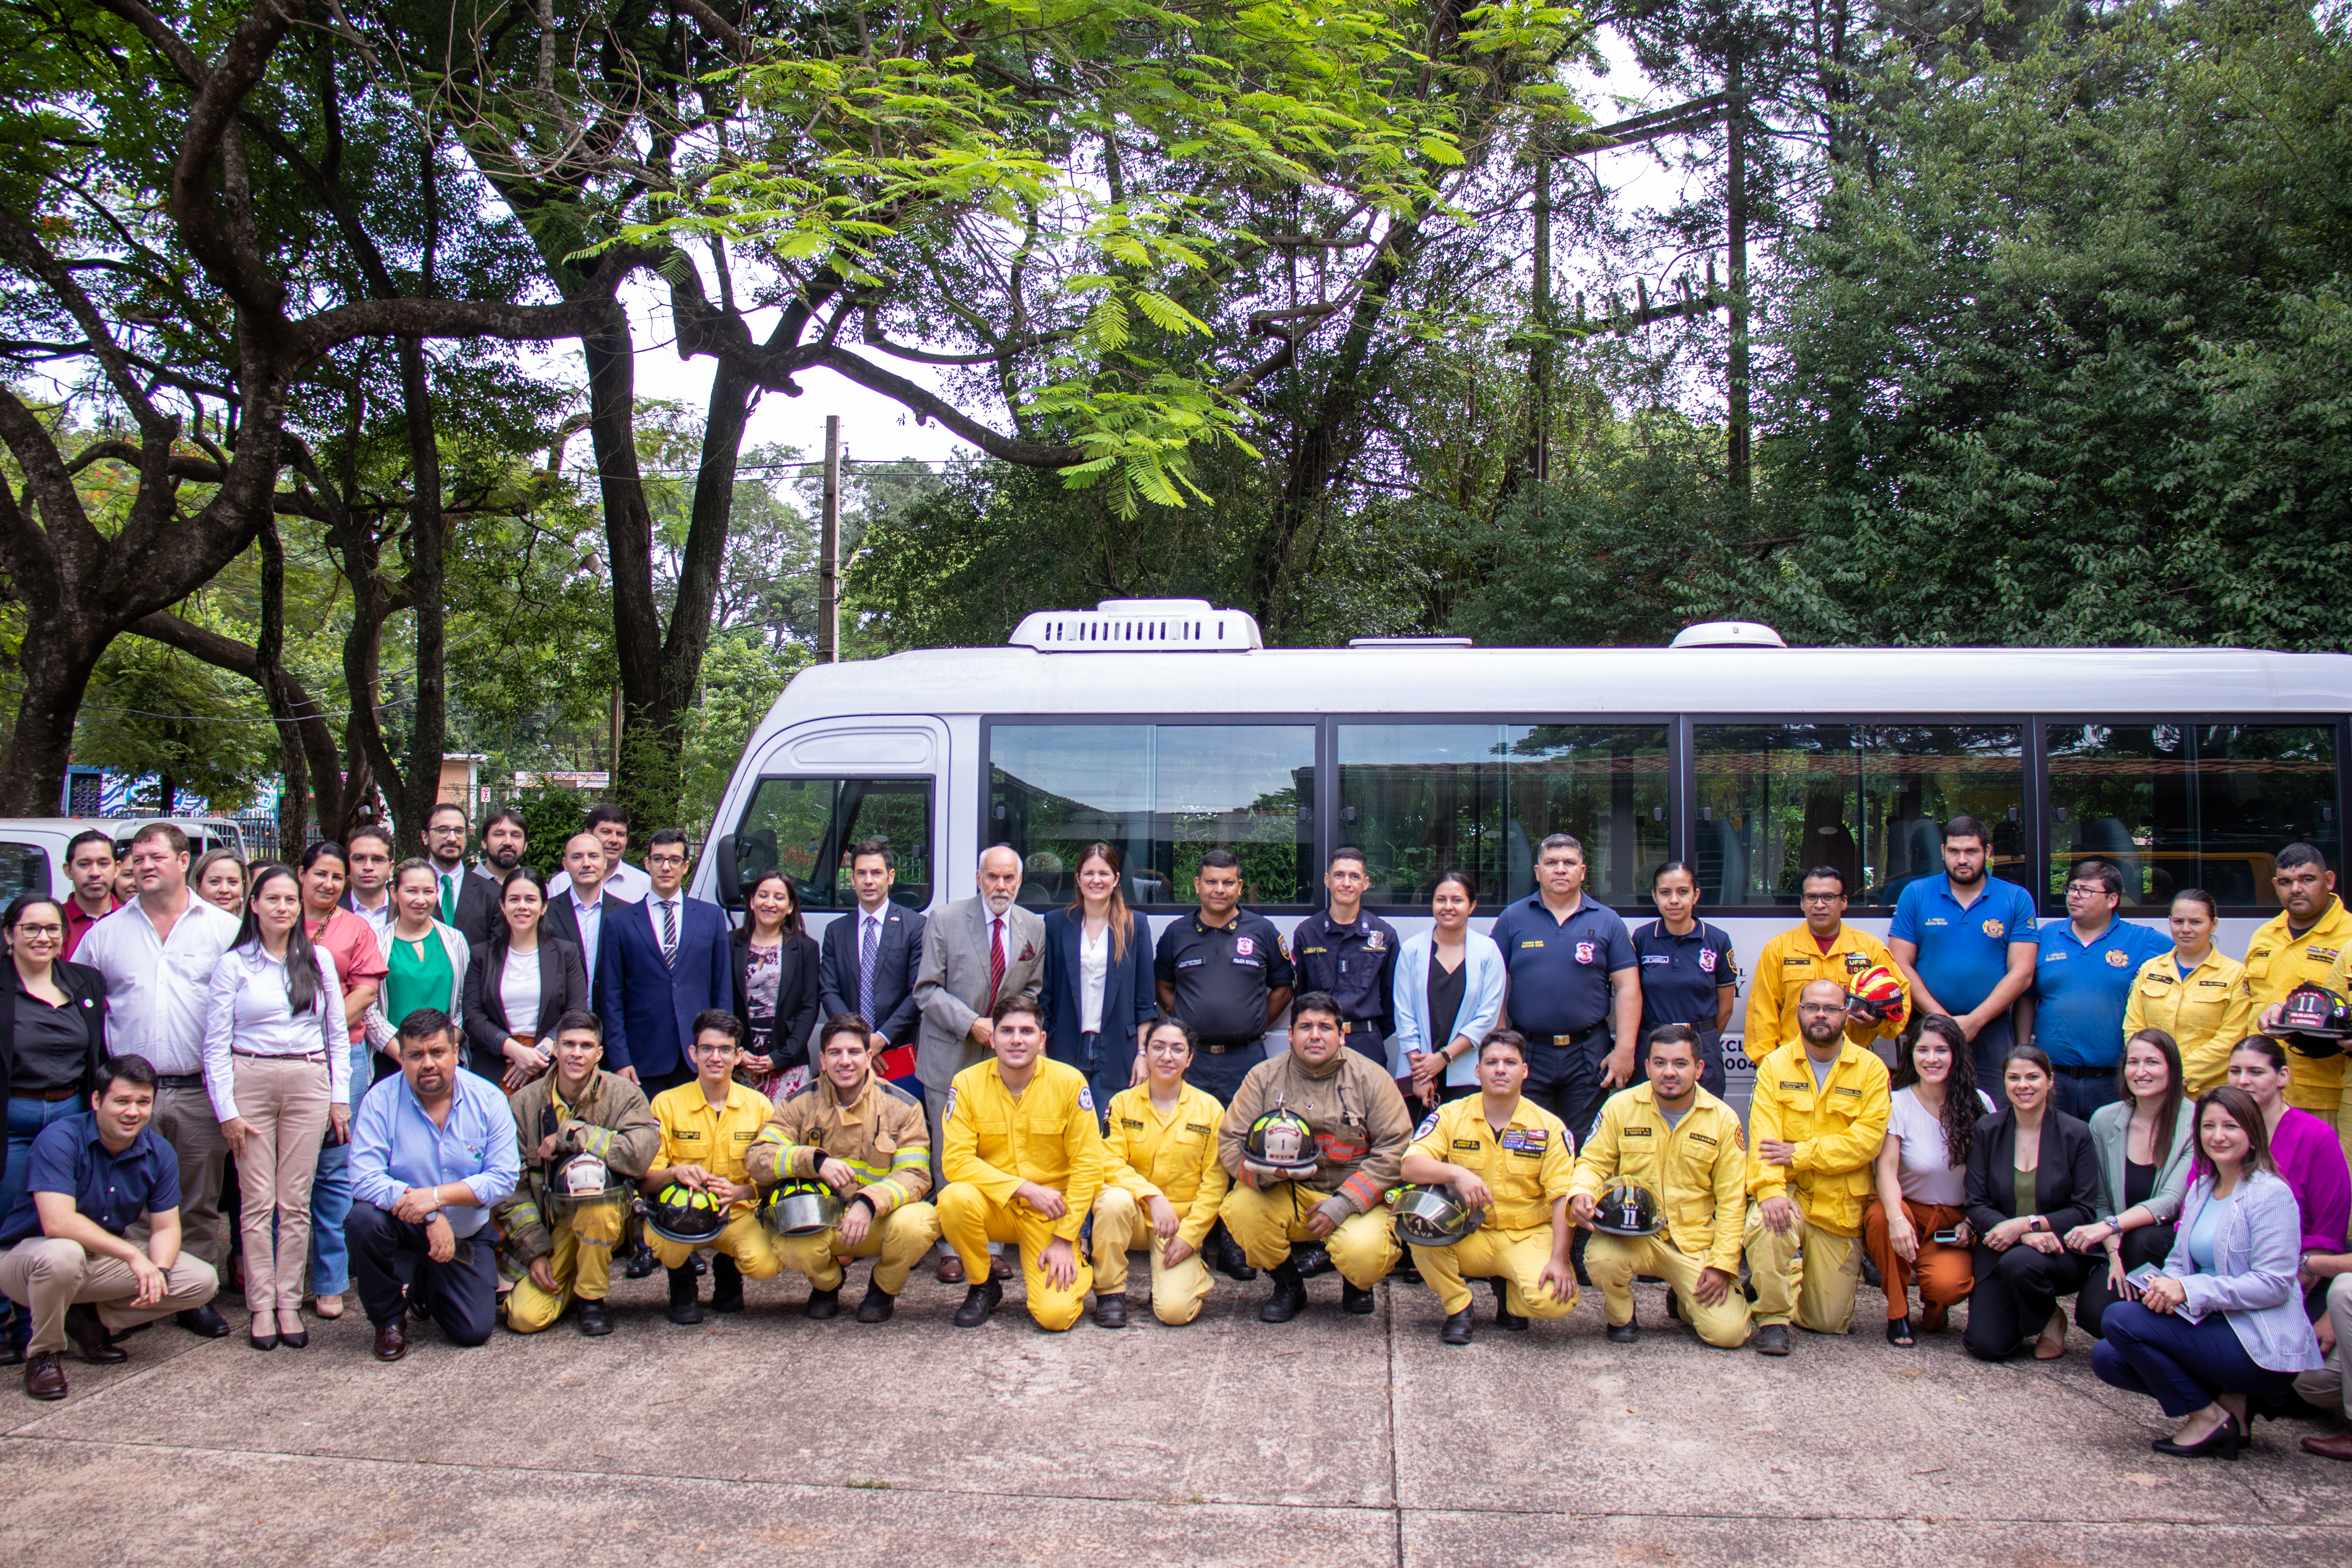 Proyecto de Cooperación y Asistencia técnica en protección contra incendios forestales, que reafirma el compromiso de apoyo entre Paraguay, Chile y Canadá